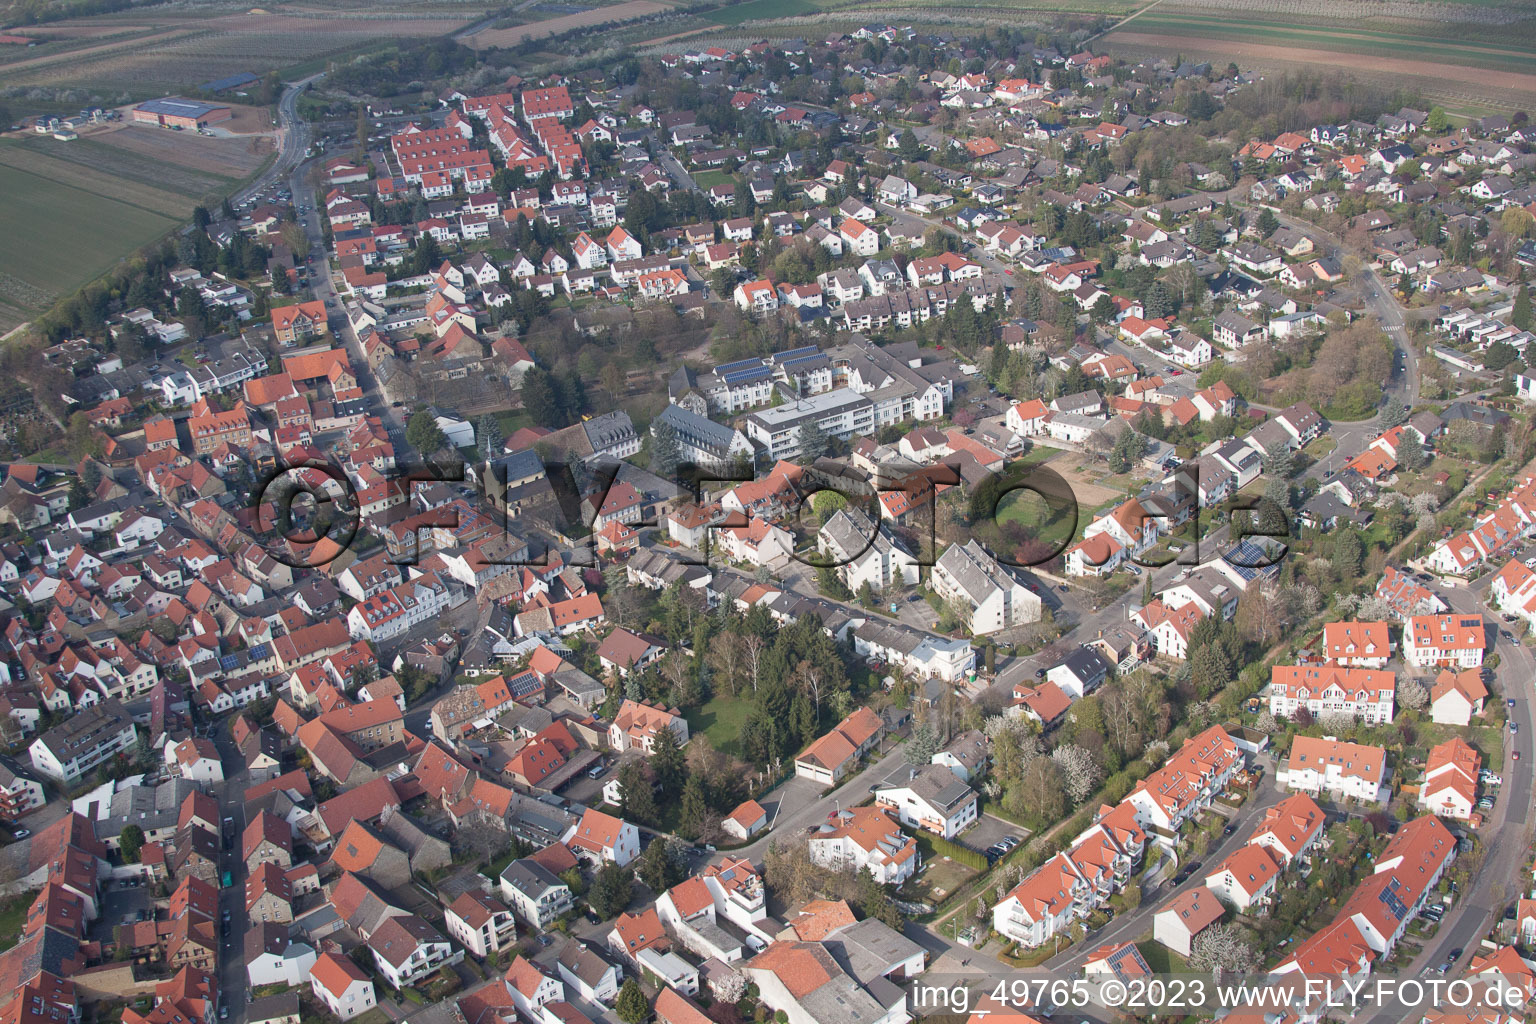 Luftbild von Ortsteil Drais in Mainz im Bundesland Rheinland-Pfalz, Deutschland